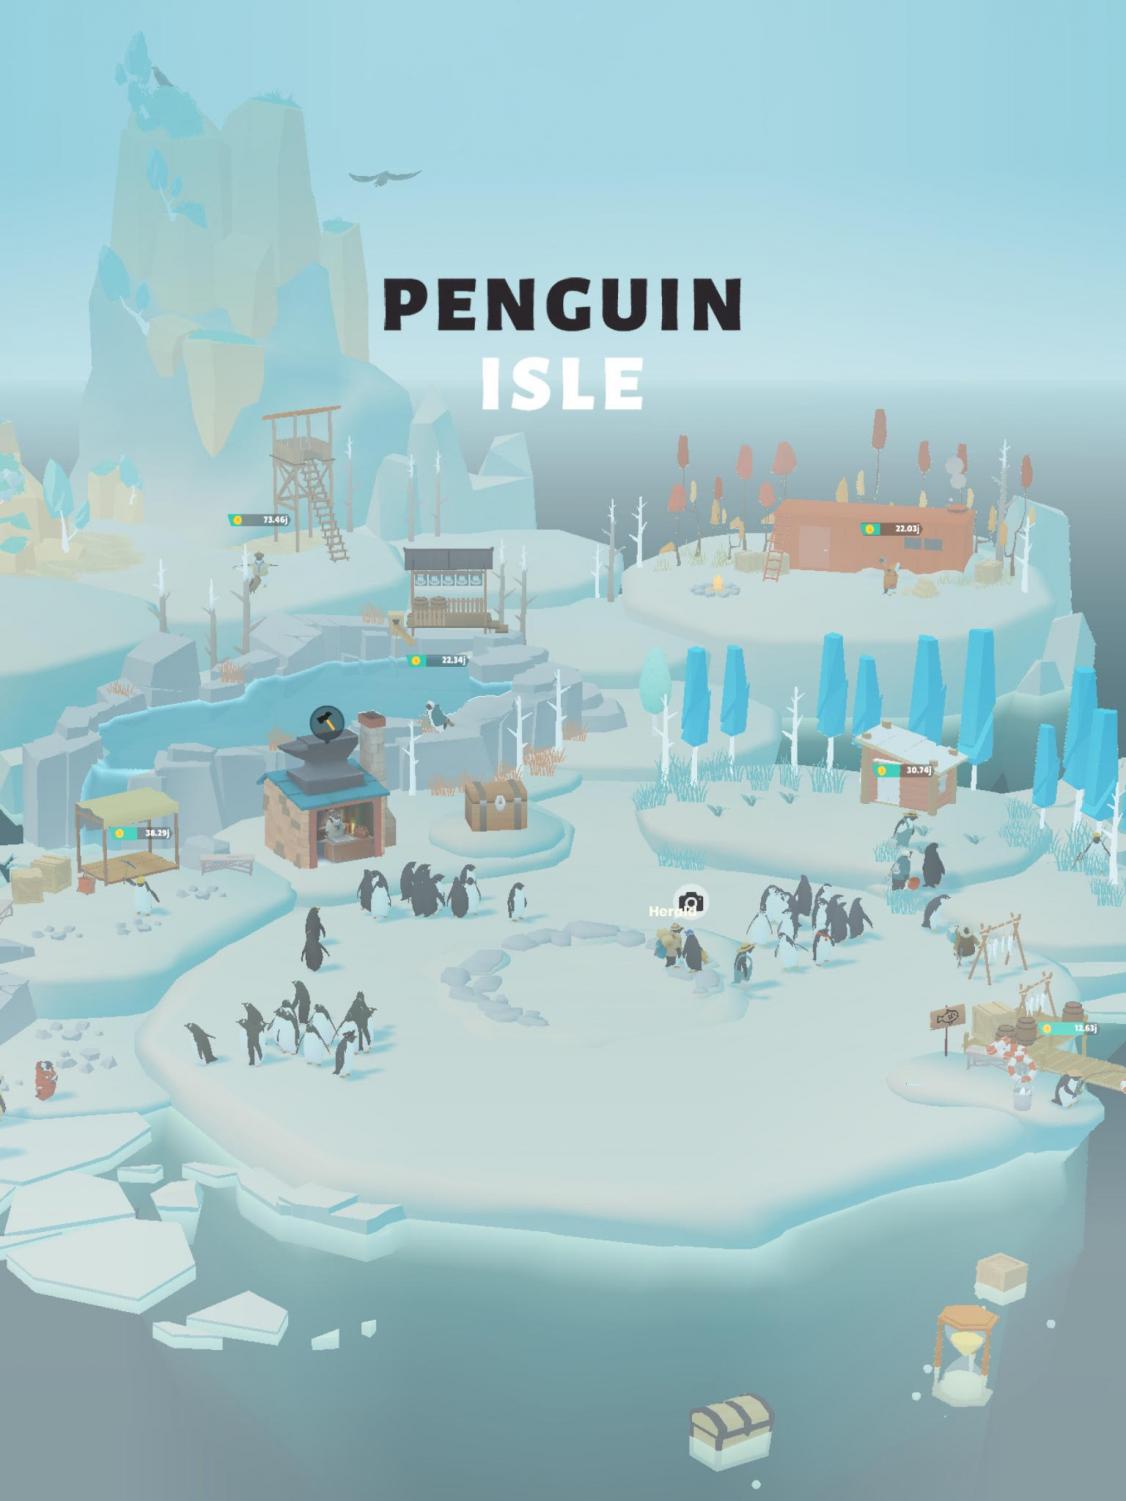 Penguin Dive - Jogo Gratuito Online